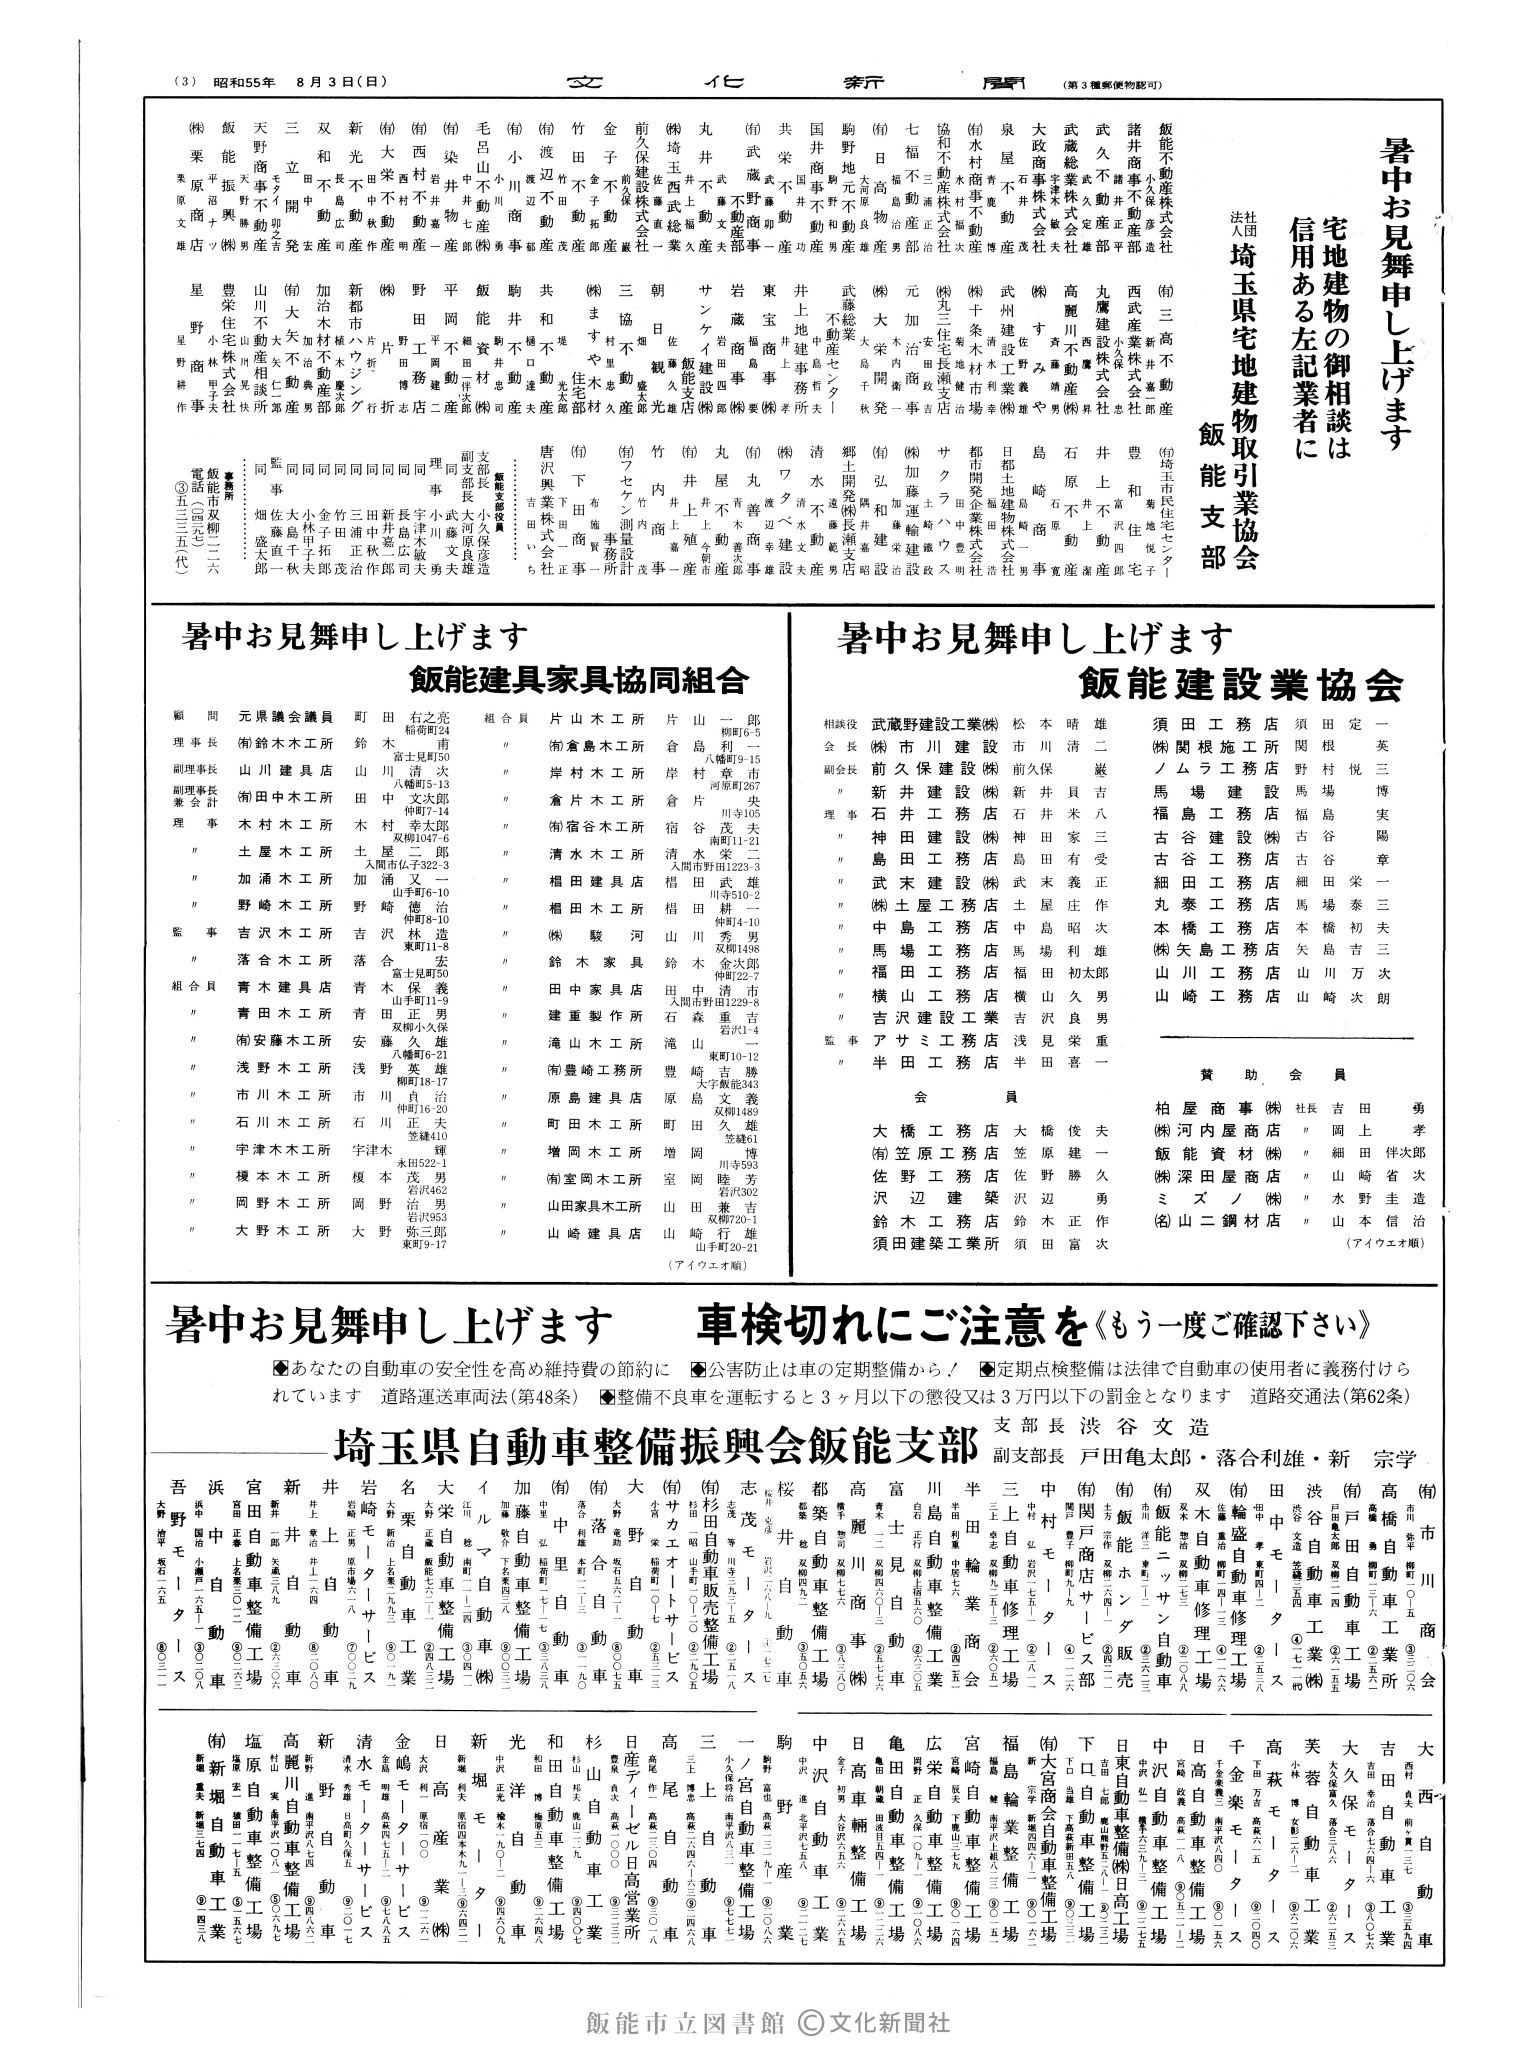 昭和55年8月3日3面 (第9601号) 広告ページ